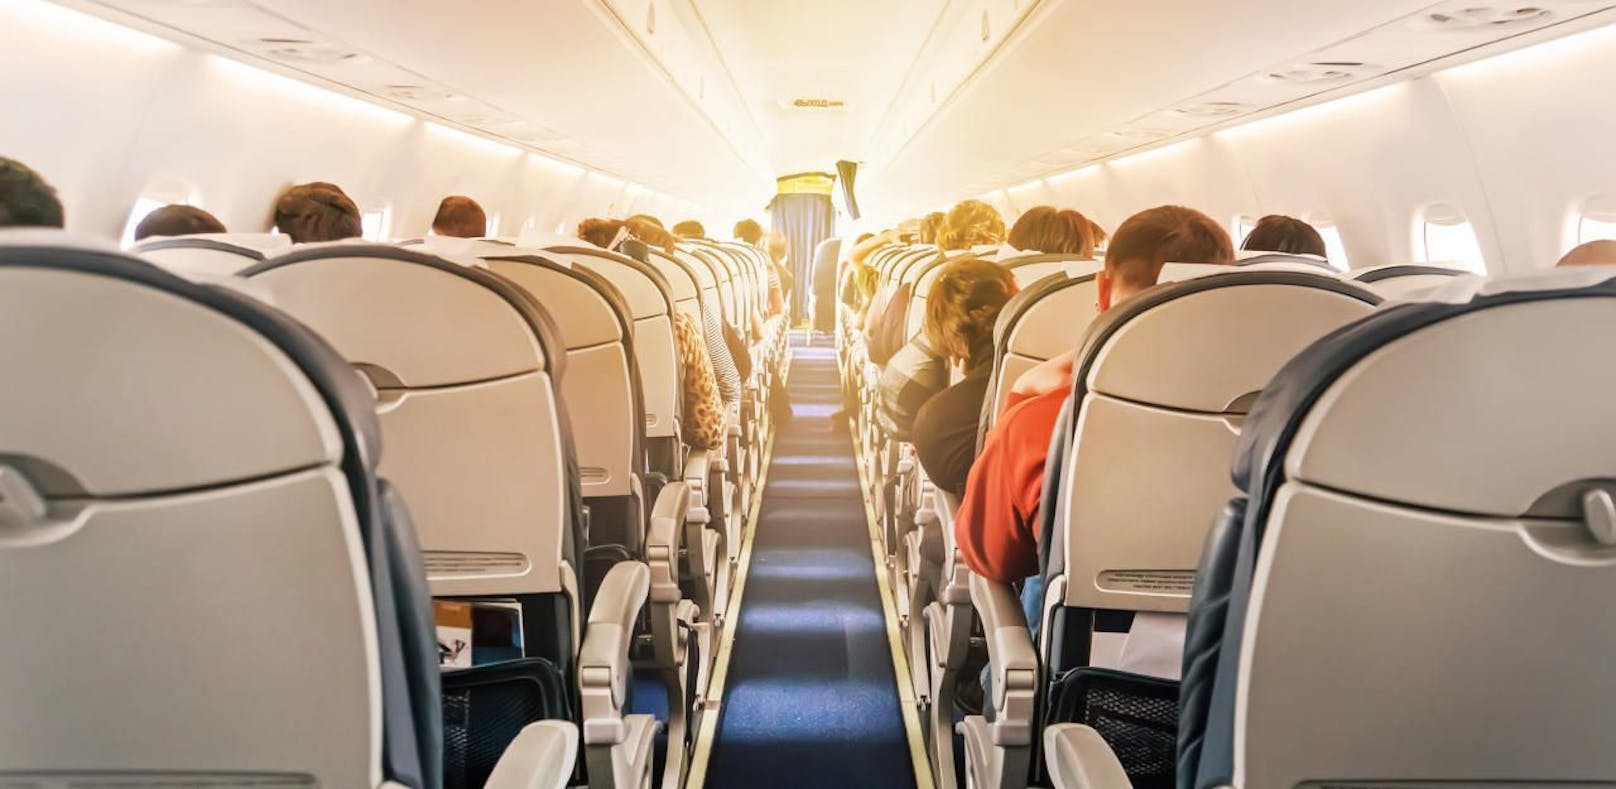 Das Reisen mit einem Flugzeug hat für Menschen mit Behinderung oft unangenehme Konsequenzen.